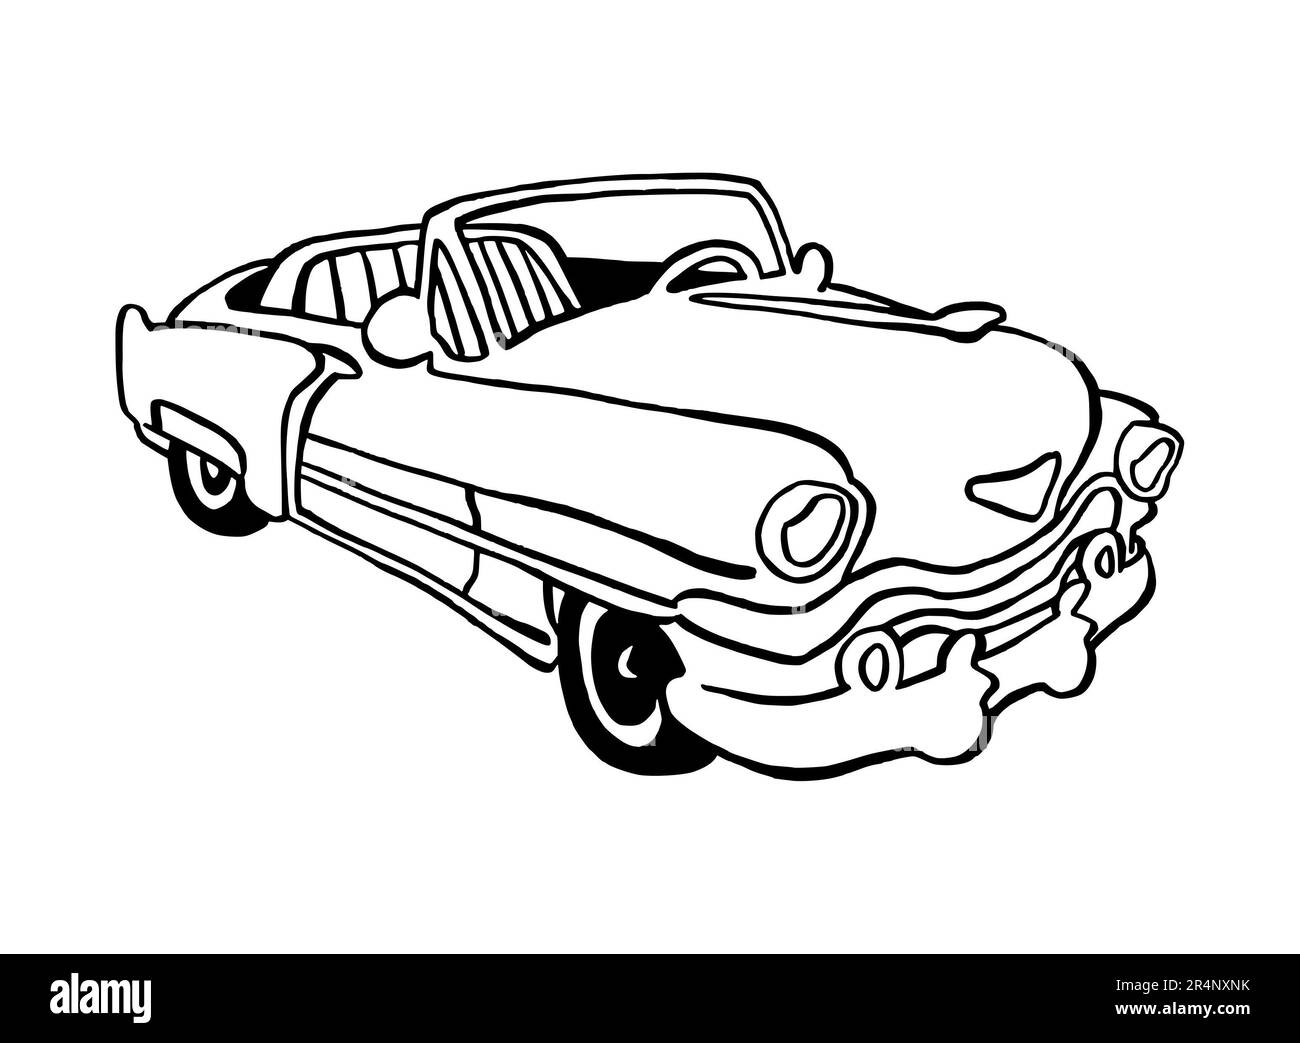 Illustration dessinée à la main d'une voiture rétro convertible, américaine, pleine grandeur, isolée sur un fond blanc, avec une ligne d'art noire Banque D'Images